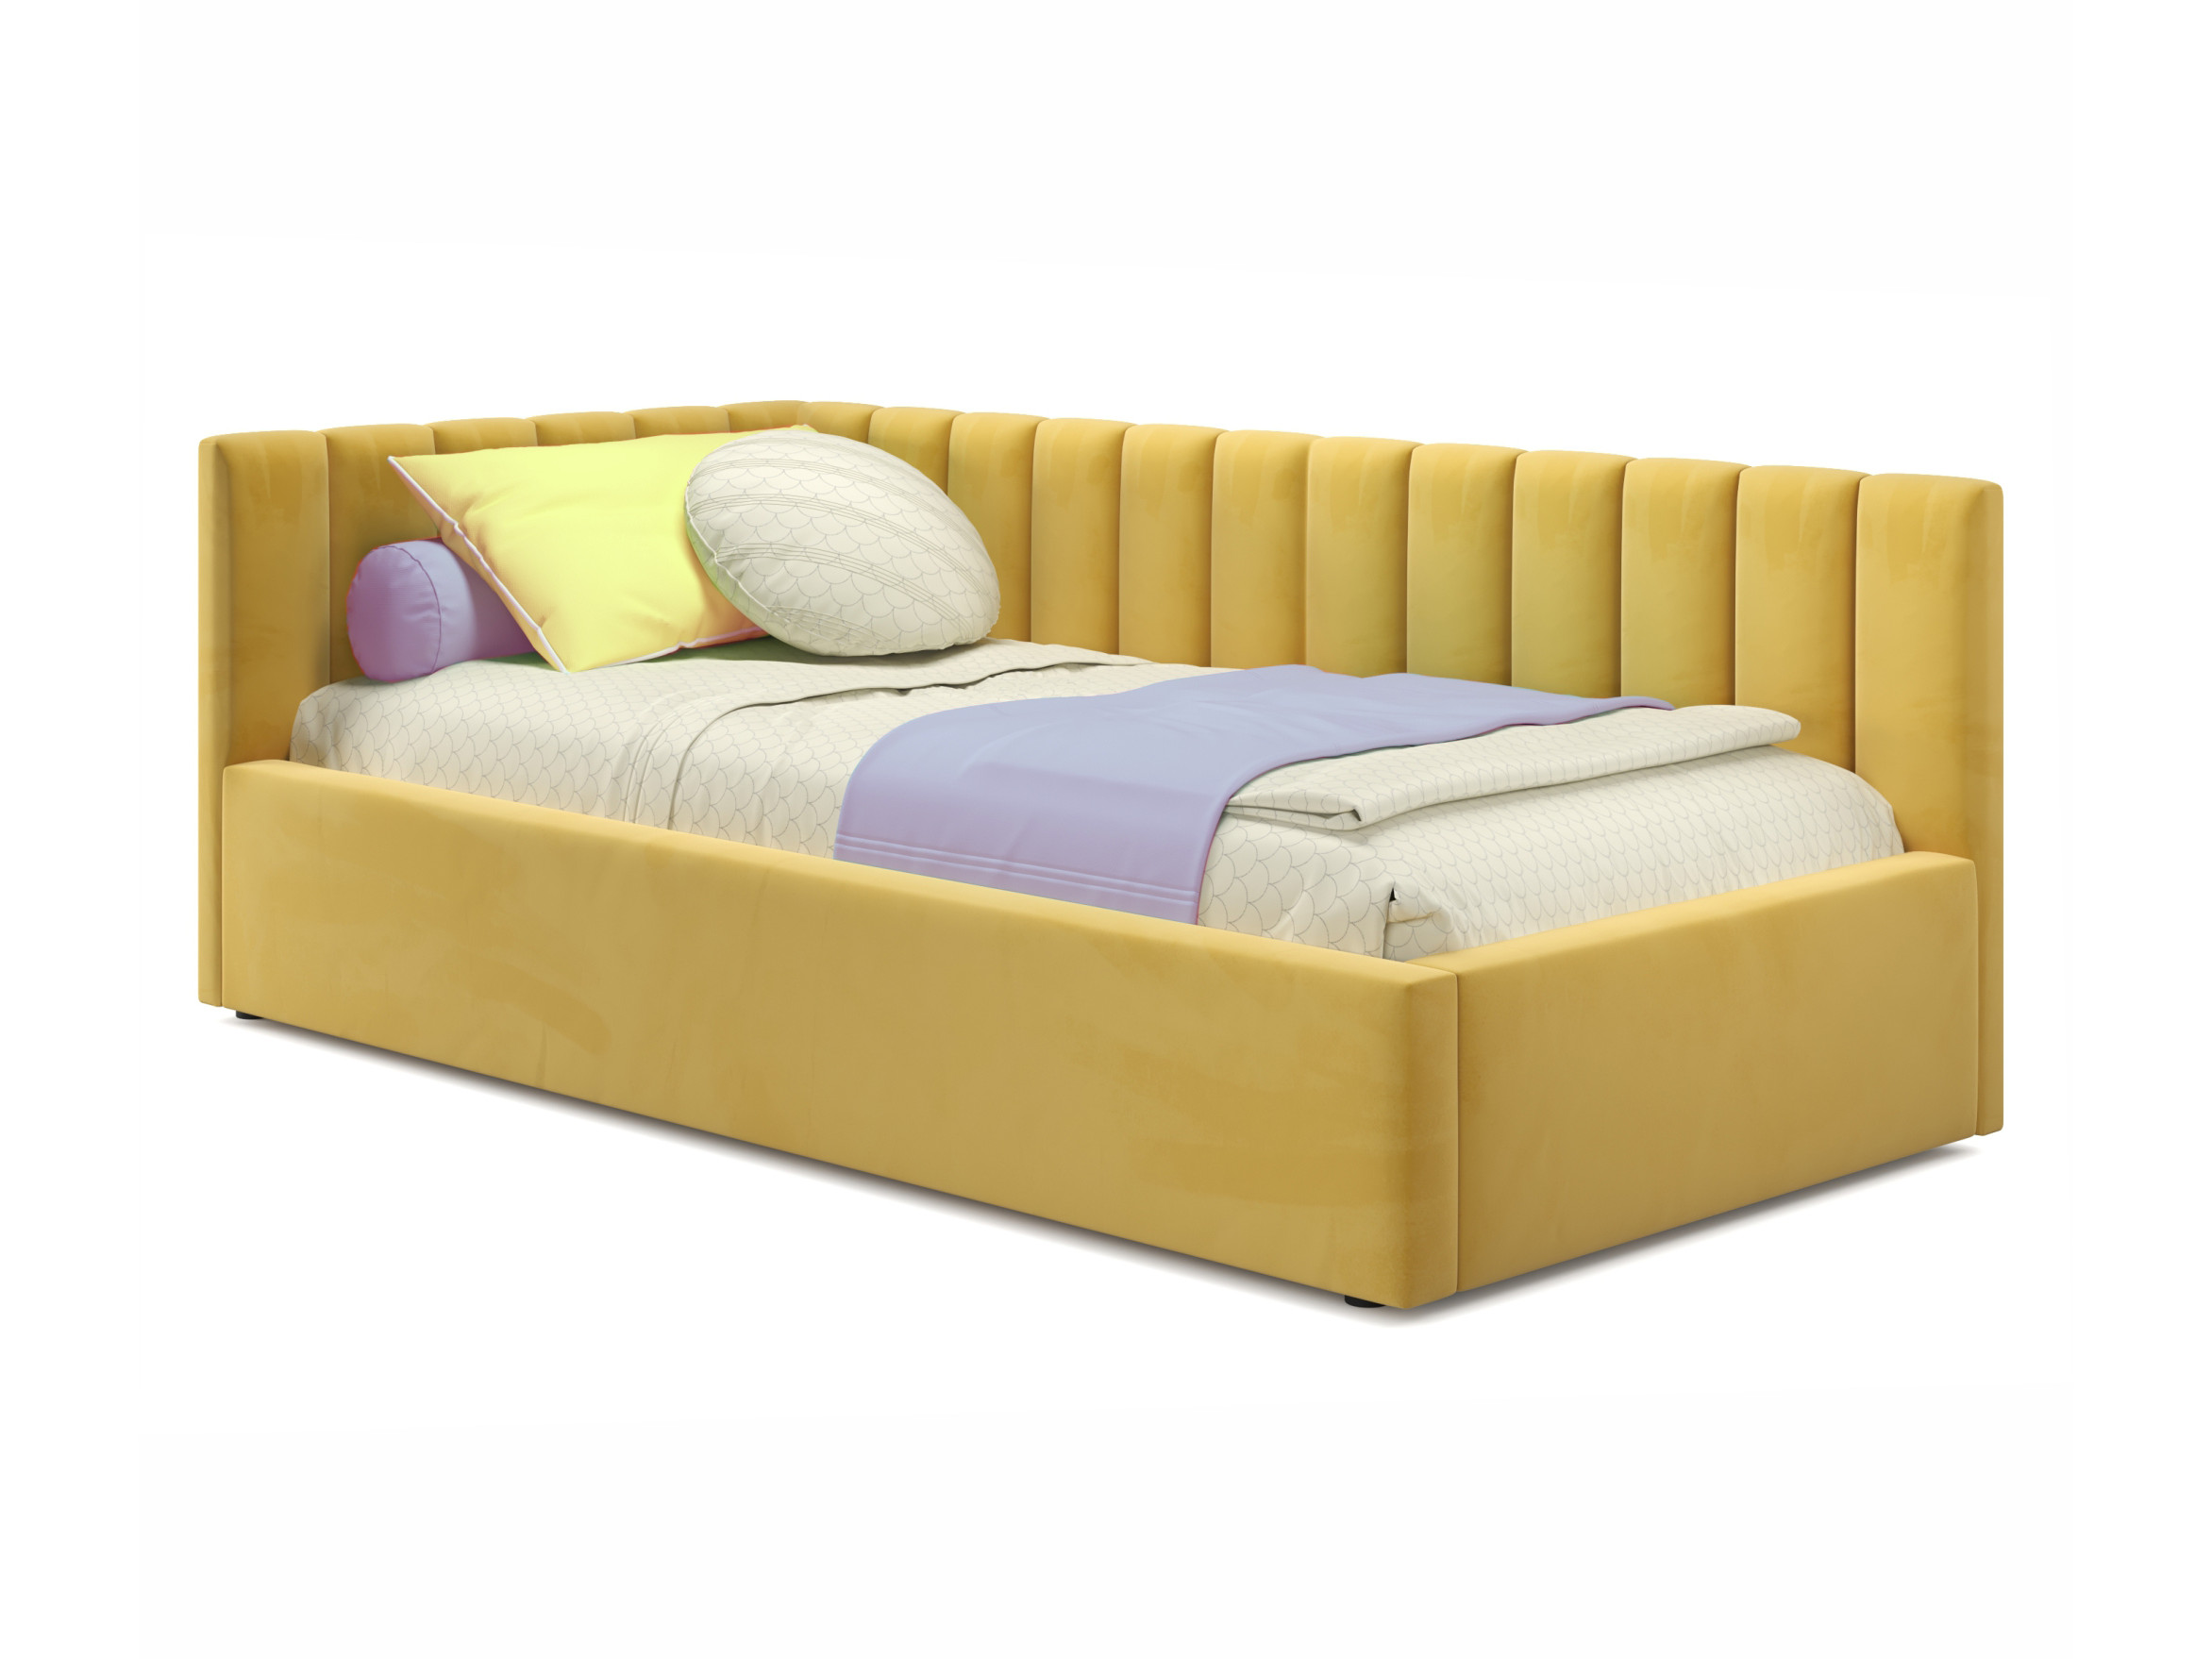 Мягкая кровать Milena 900 желтая с подъемным механизмом желтый, Желтый, Велюр, ДСП